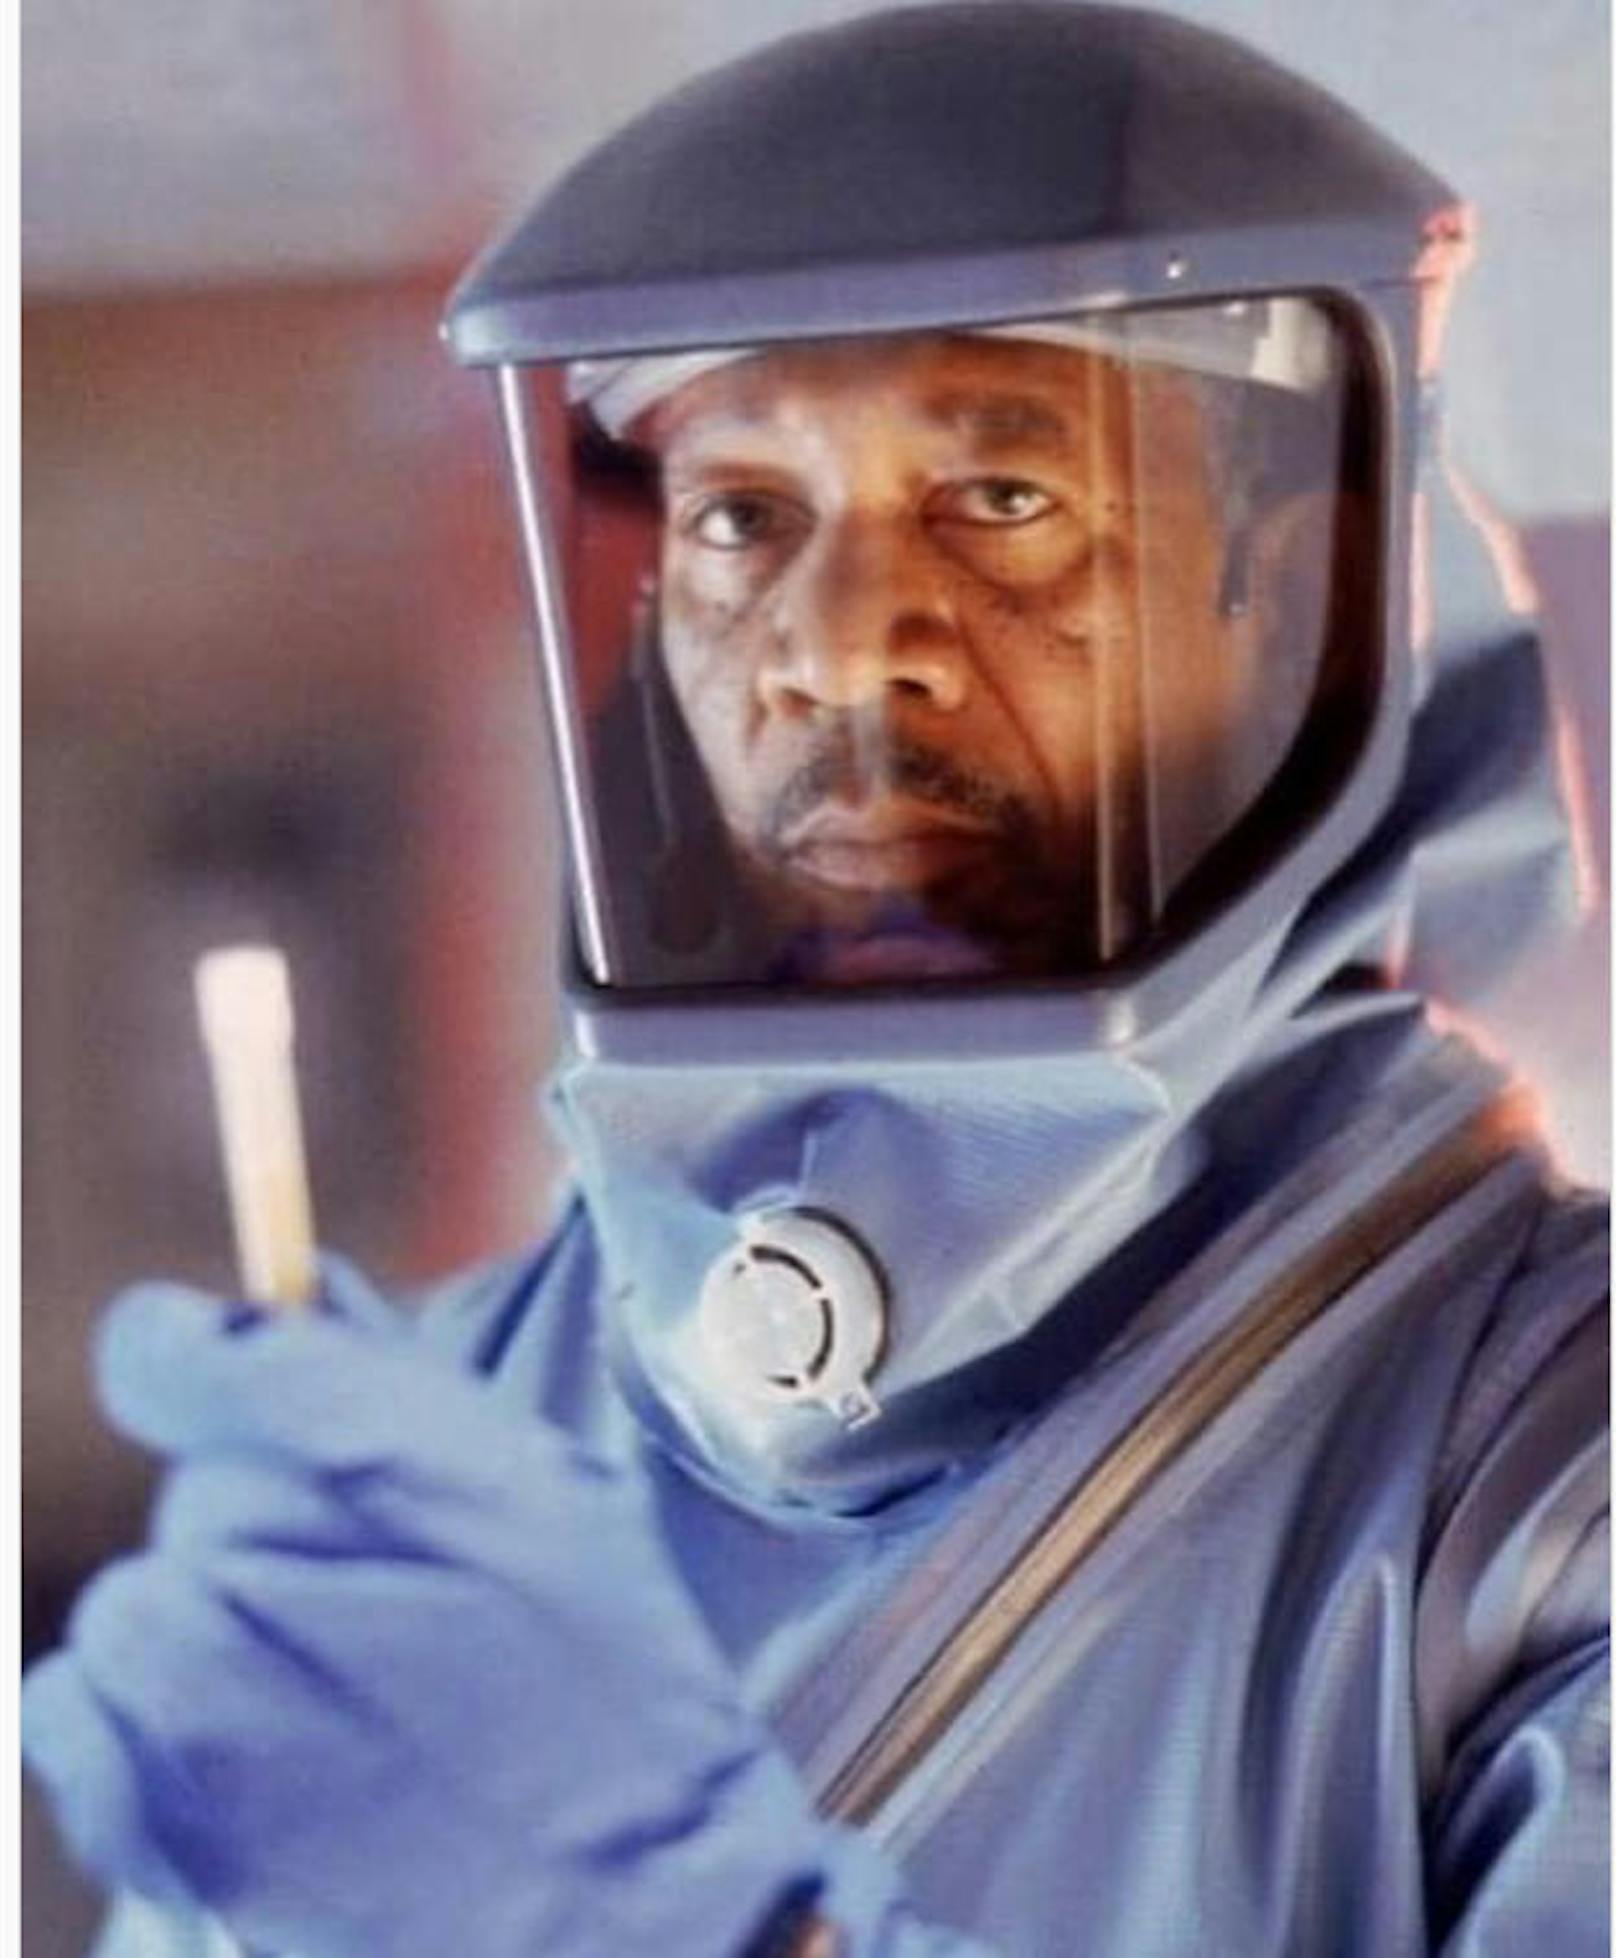 11.4.2020: Jemand hat <strong>Morgan Freeman</strong> erzählt, dass #Outbreak gerade trendet. 1995 schrieb Freeman im Kampf gegen ein tödliches Virus Kino-Geschichte. "Vielleicht hätt ich mir den Anzug behalten sollen", sinniert er im Nachhinein. 